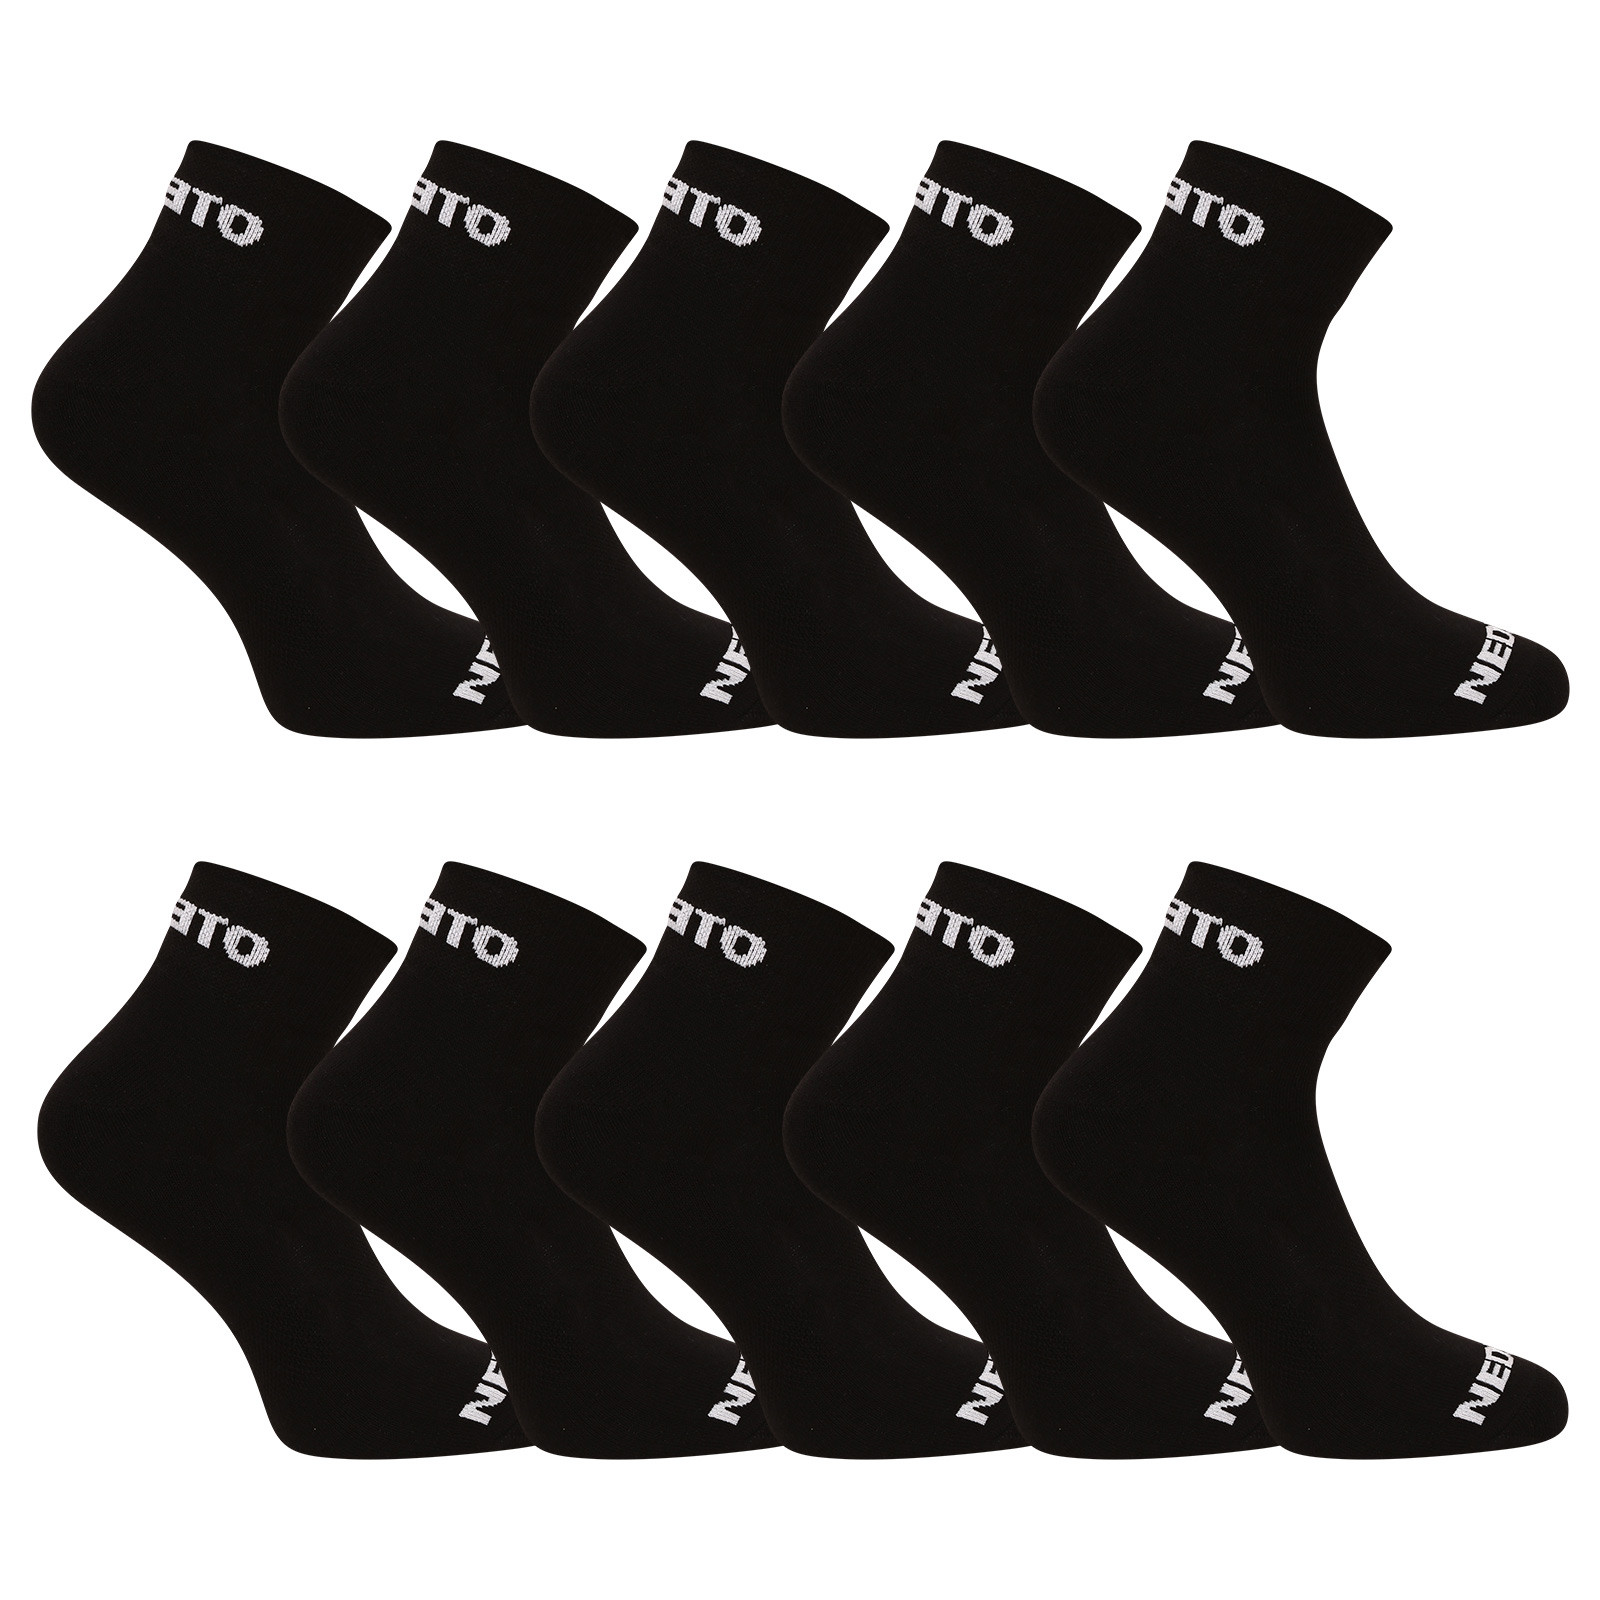 E-shop 10PACK ponožky Nedeto kotníkové černé